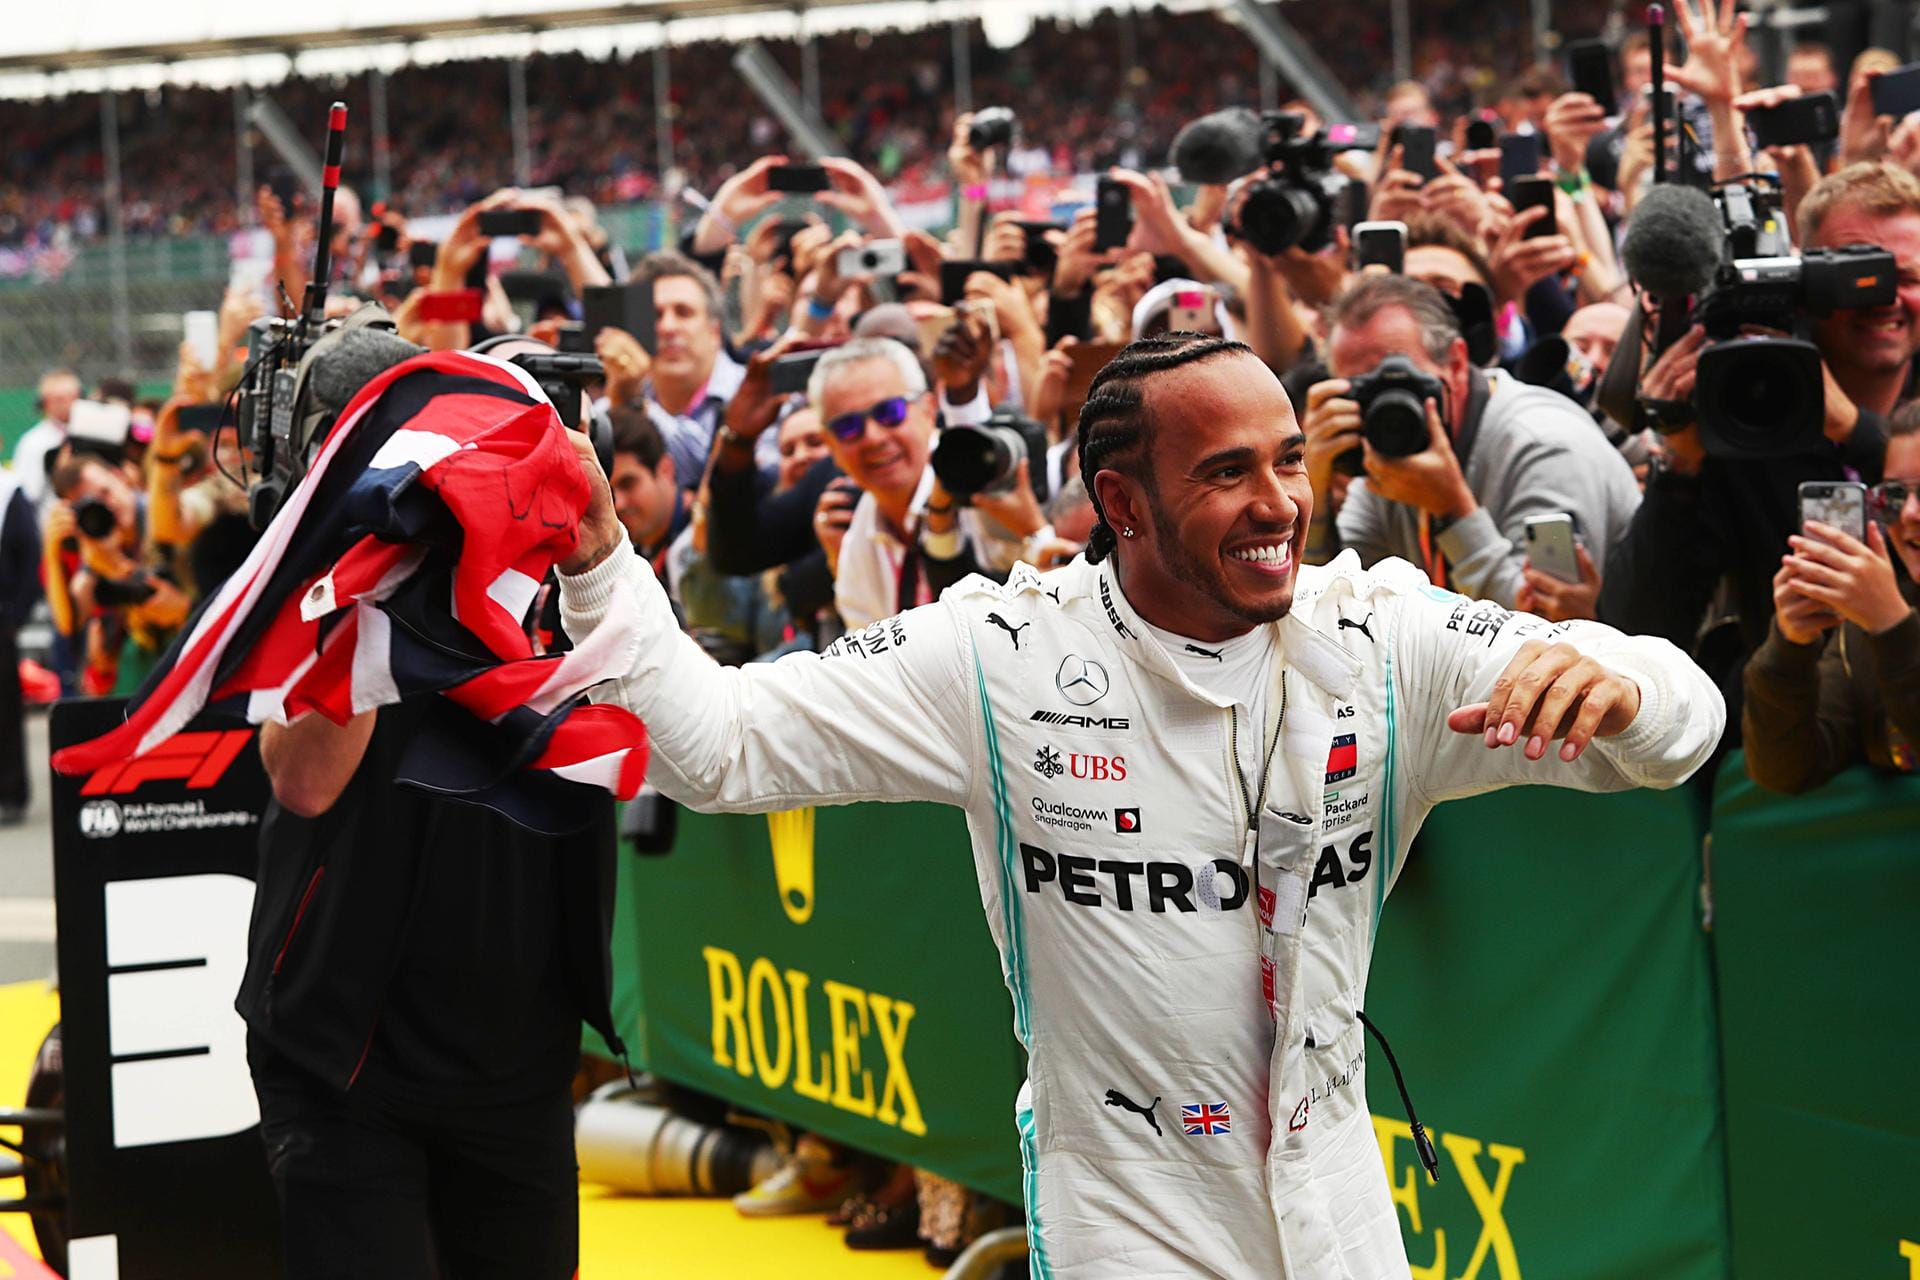 "The Guardian" (Großbritannien): "Hamiltons Sieg war etwas dem Glück geschuldet. Aber sobald alle Hindernisse beseitigt waren, brachte er den Sieg mit der unablässigen Kontrolle zum Abschluss, die ihn fünf Titel einfahren ließ. Nun scheint ein sechster näher denn je. Er führt in der Meisterschaft vor Bottas mit 39 Punkten und hat 100 Punkte Vorsprung vor Vettel."